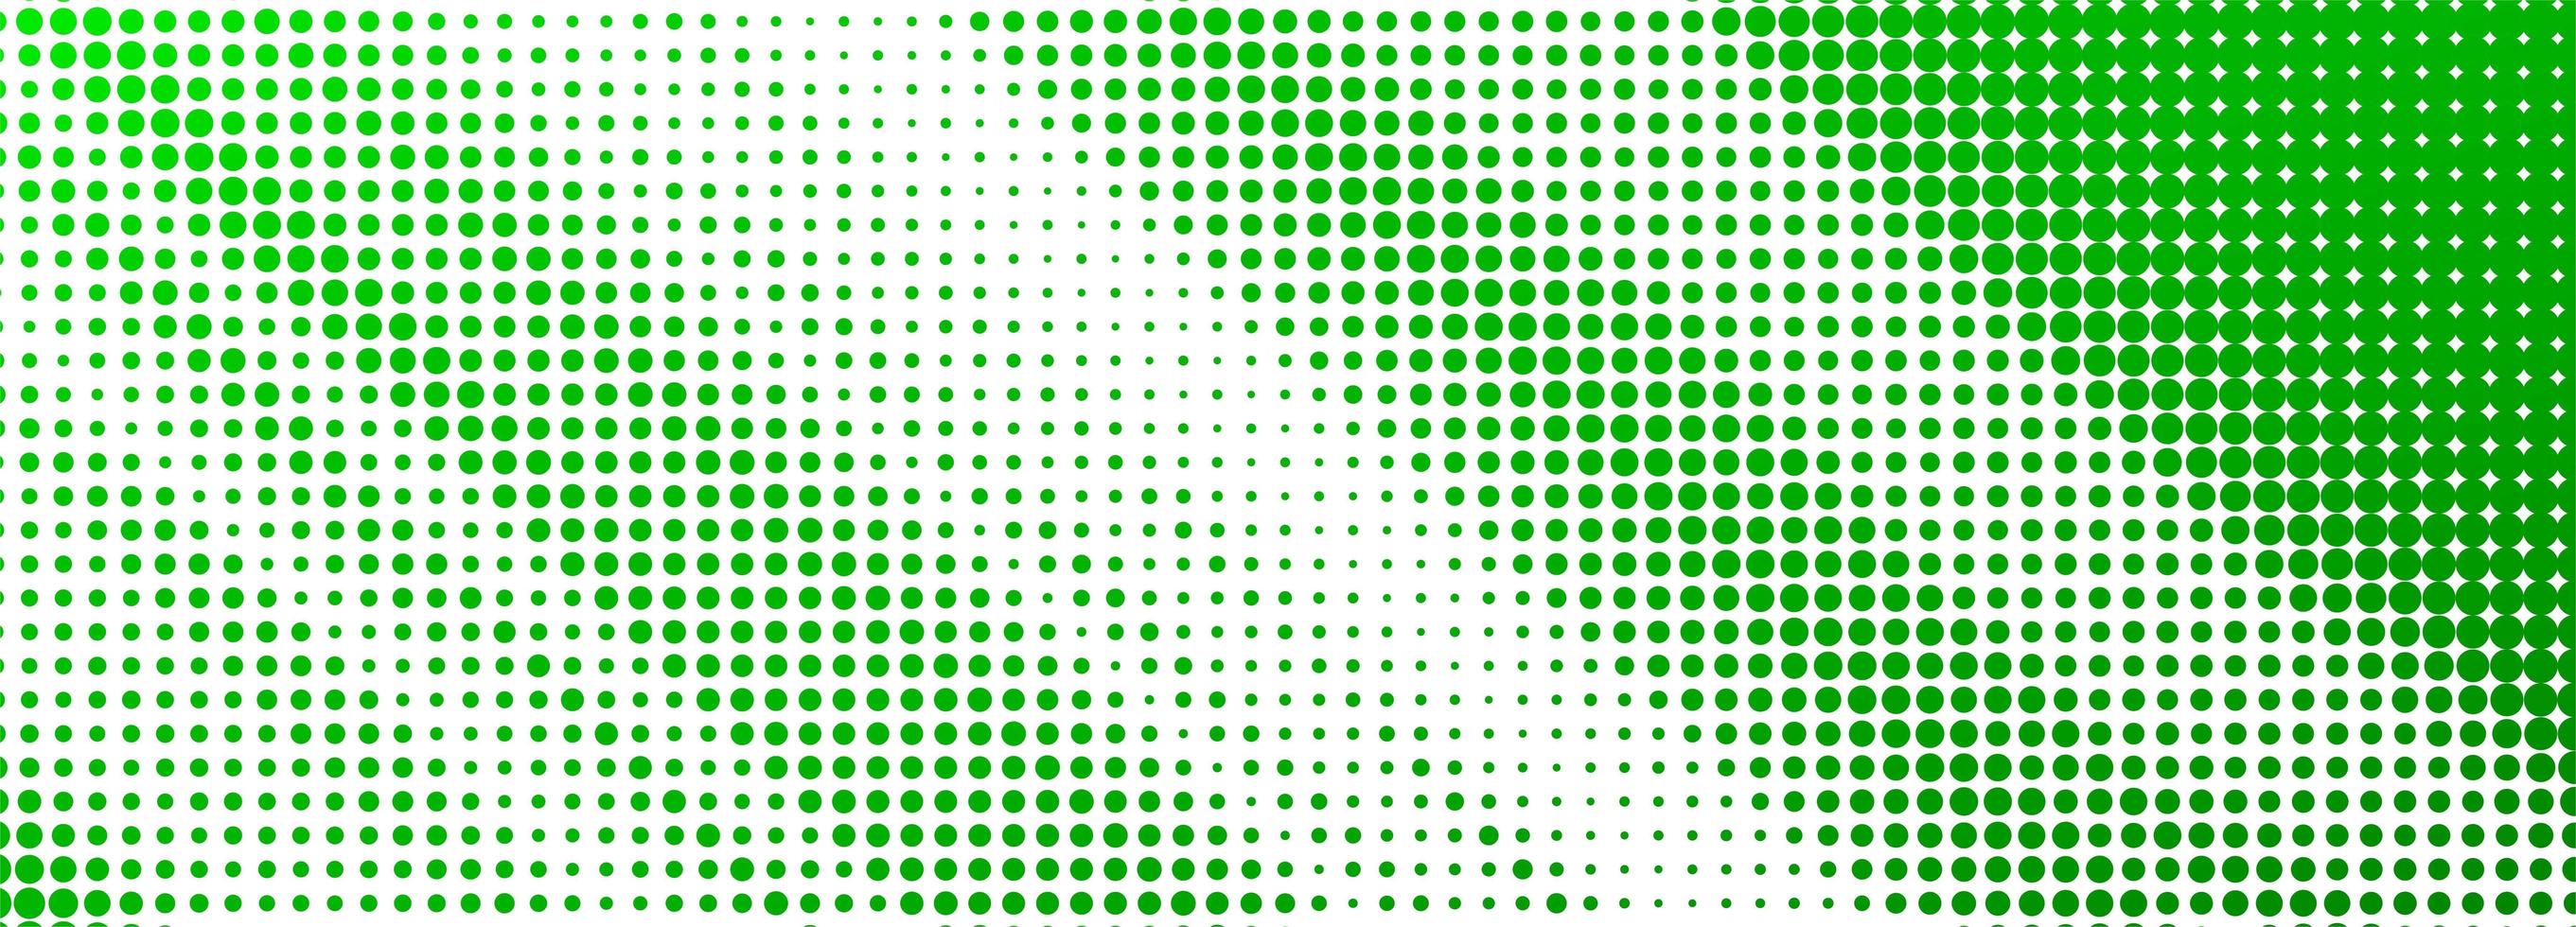 abstracte groen gestippelde banner achtergrond vector